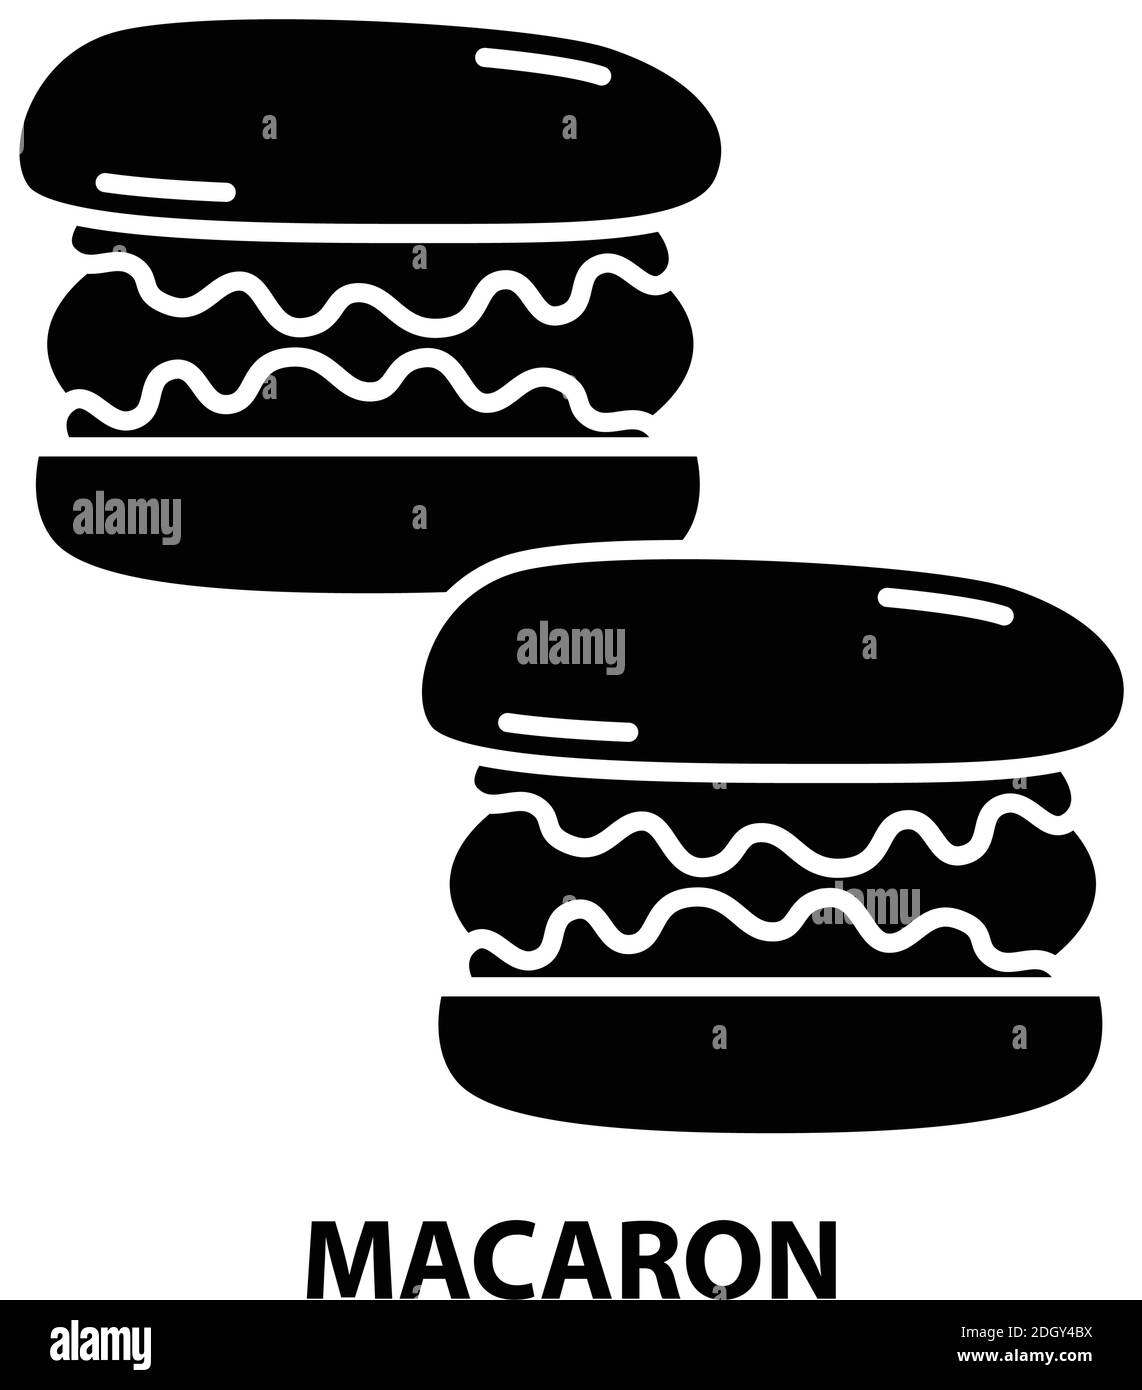 macaron-Symbol, schwarzes Vektorzeichen mit editierbaren Konturen, Konzeptdarstellung Stock Vektor